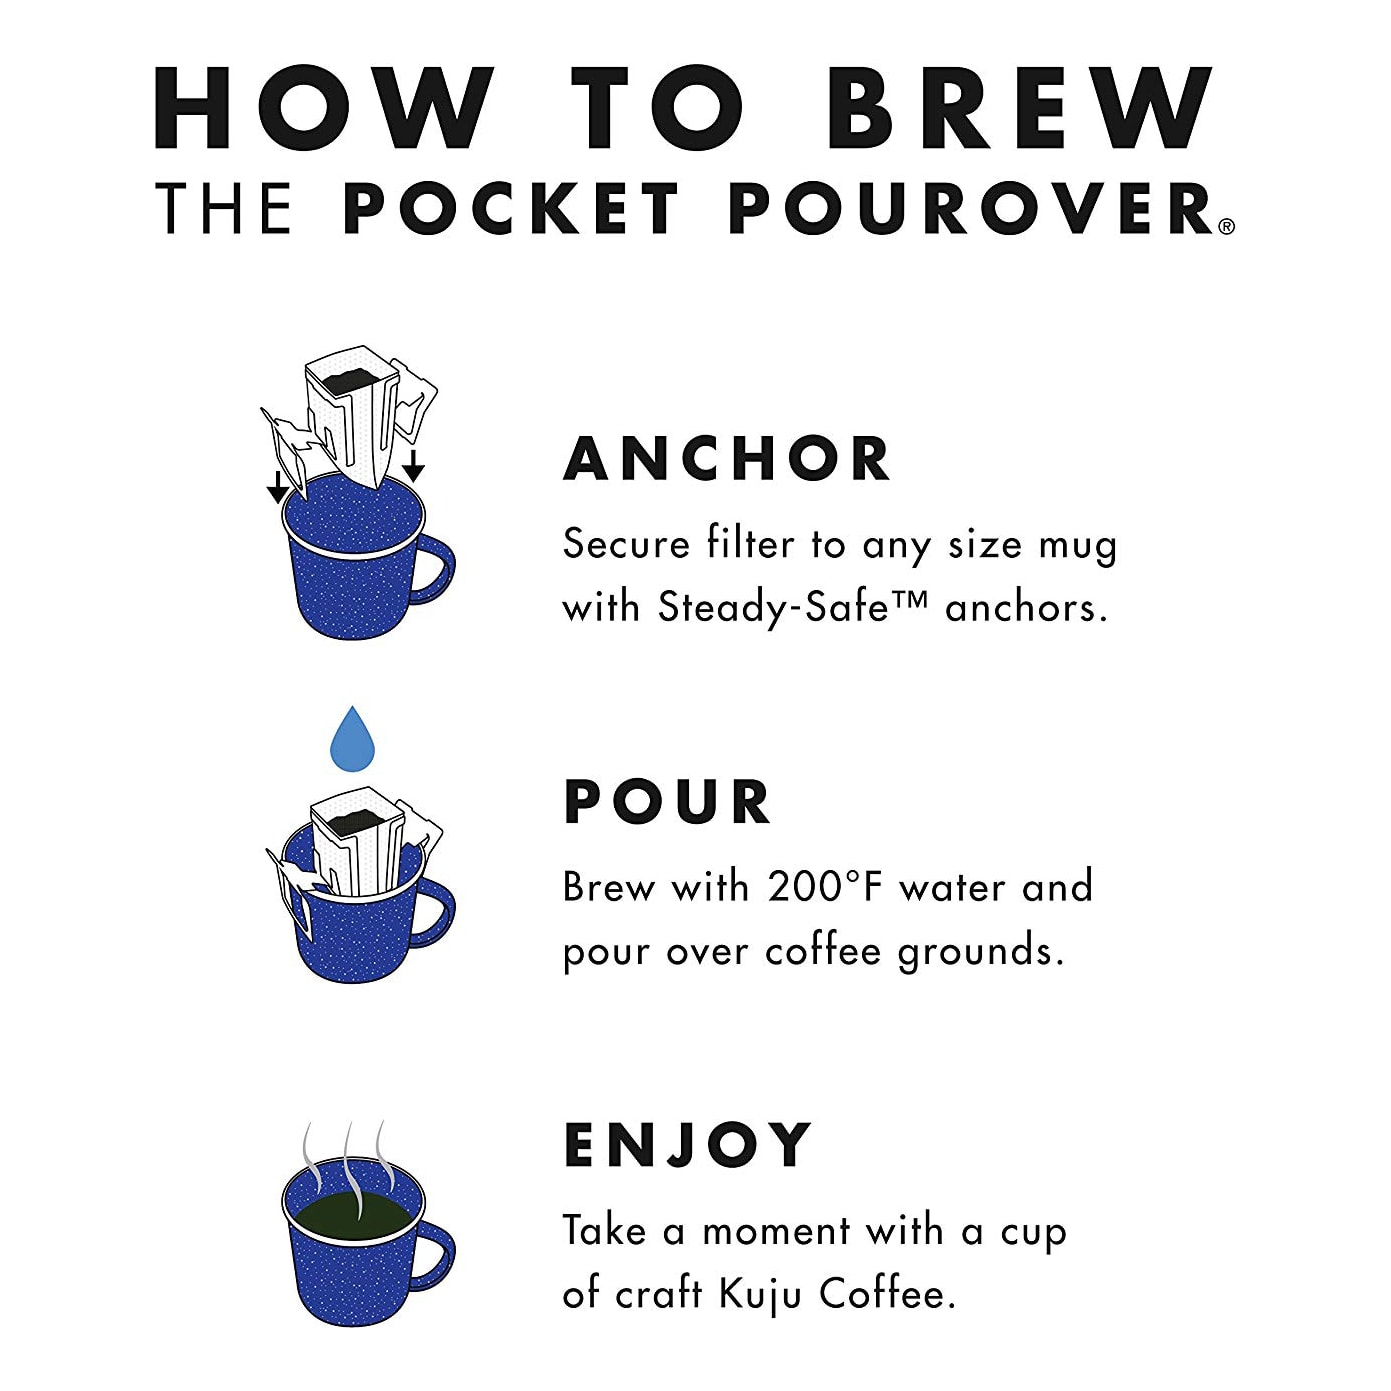 Kuju Coffee Pocket PourOver - How To Brew